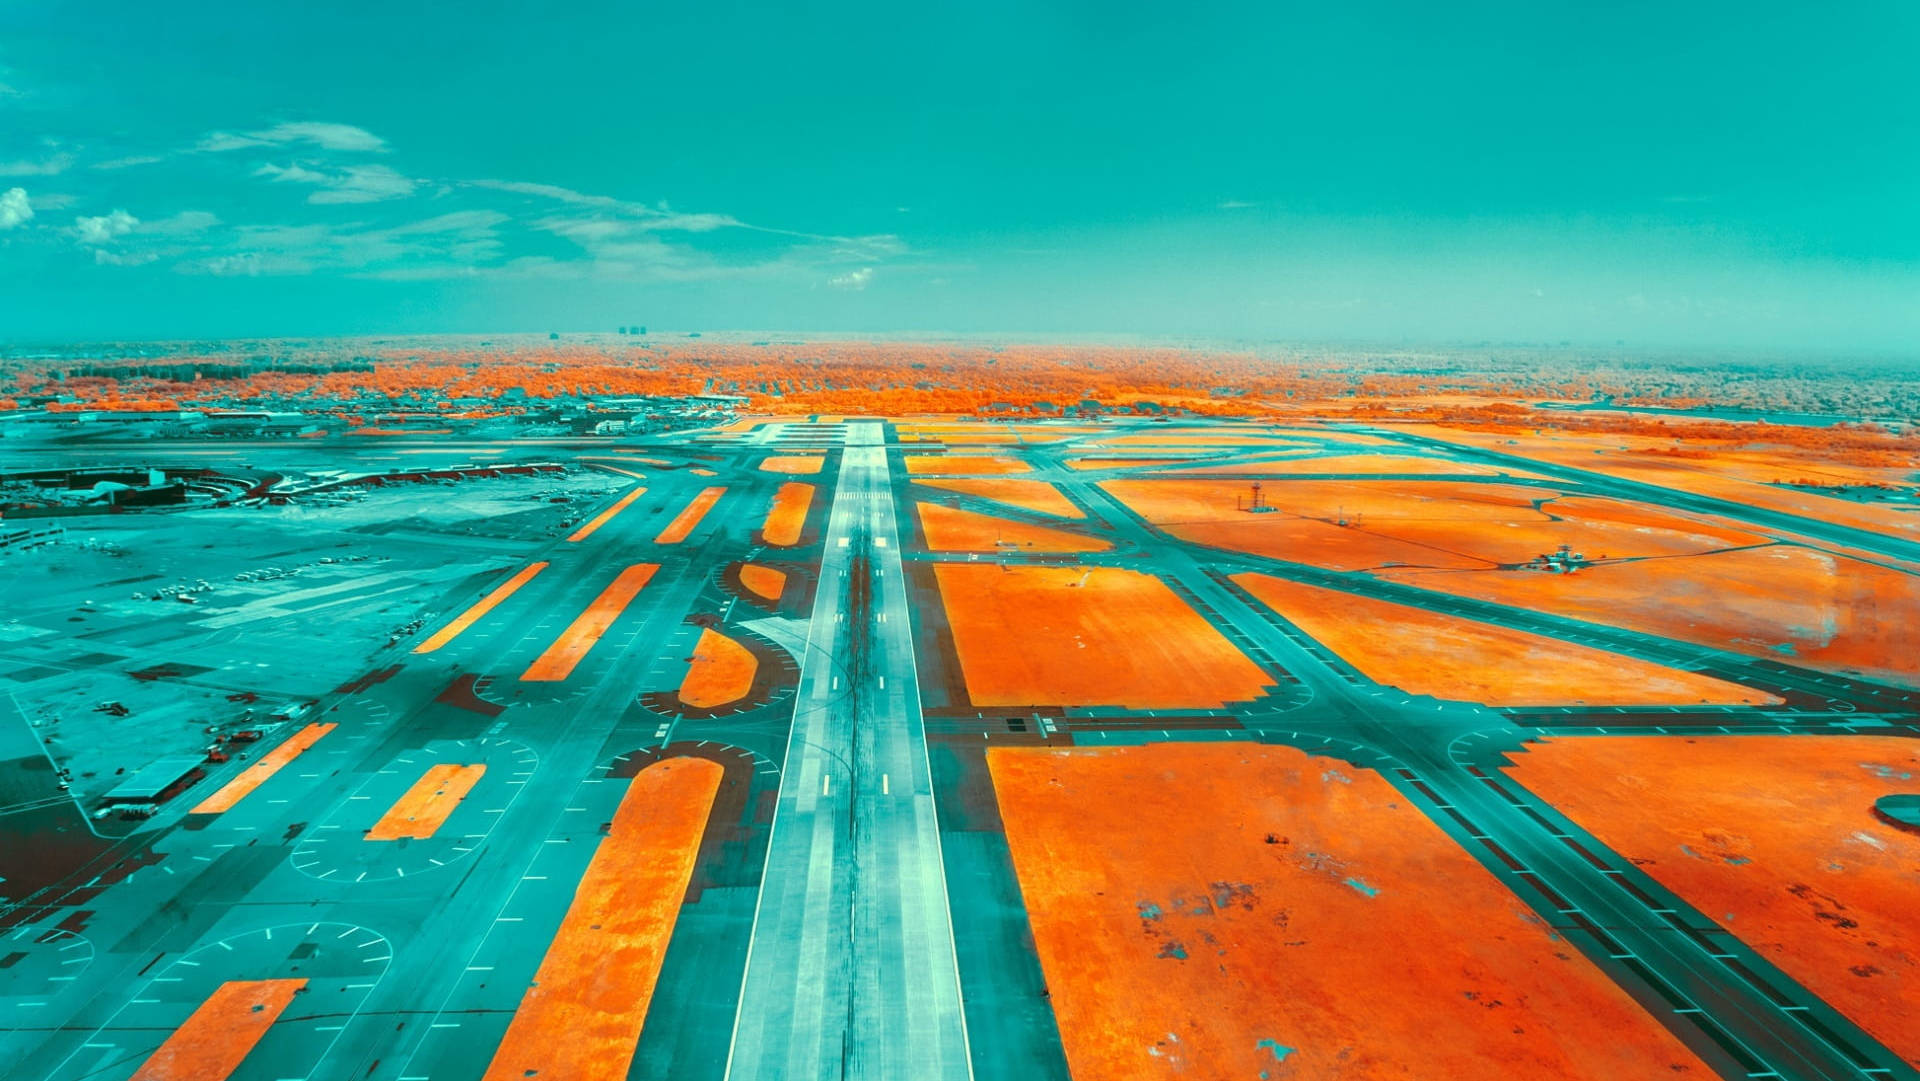 Tealoch Orange Flygplats Landningsbana. Wallpaper